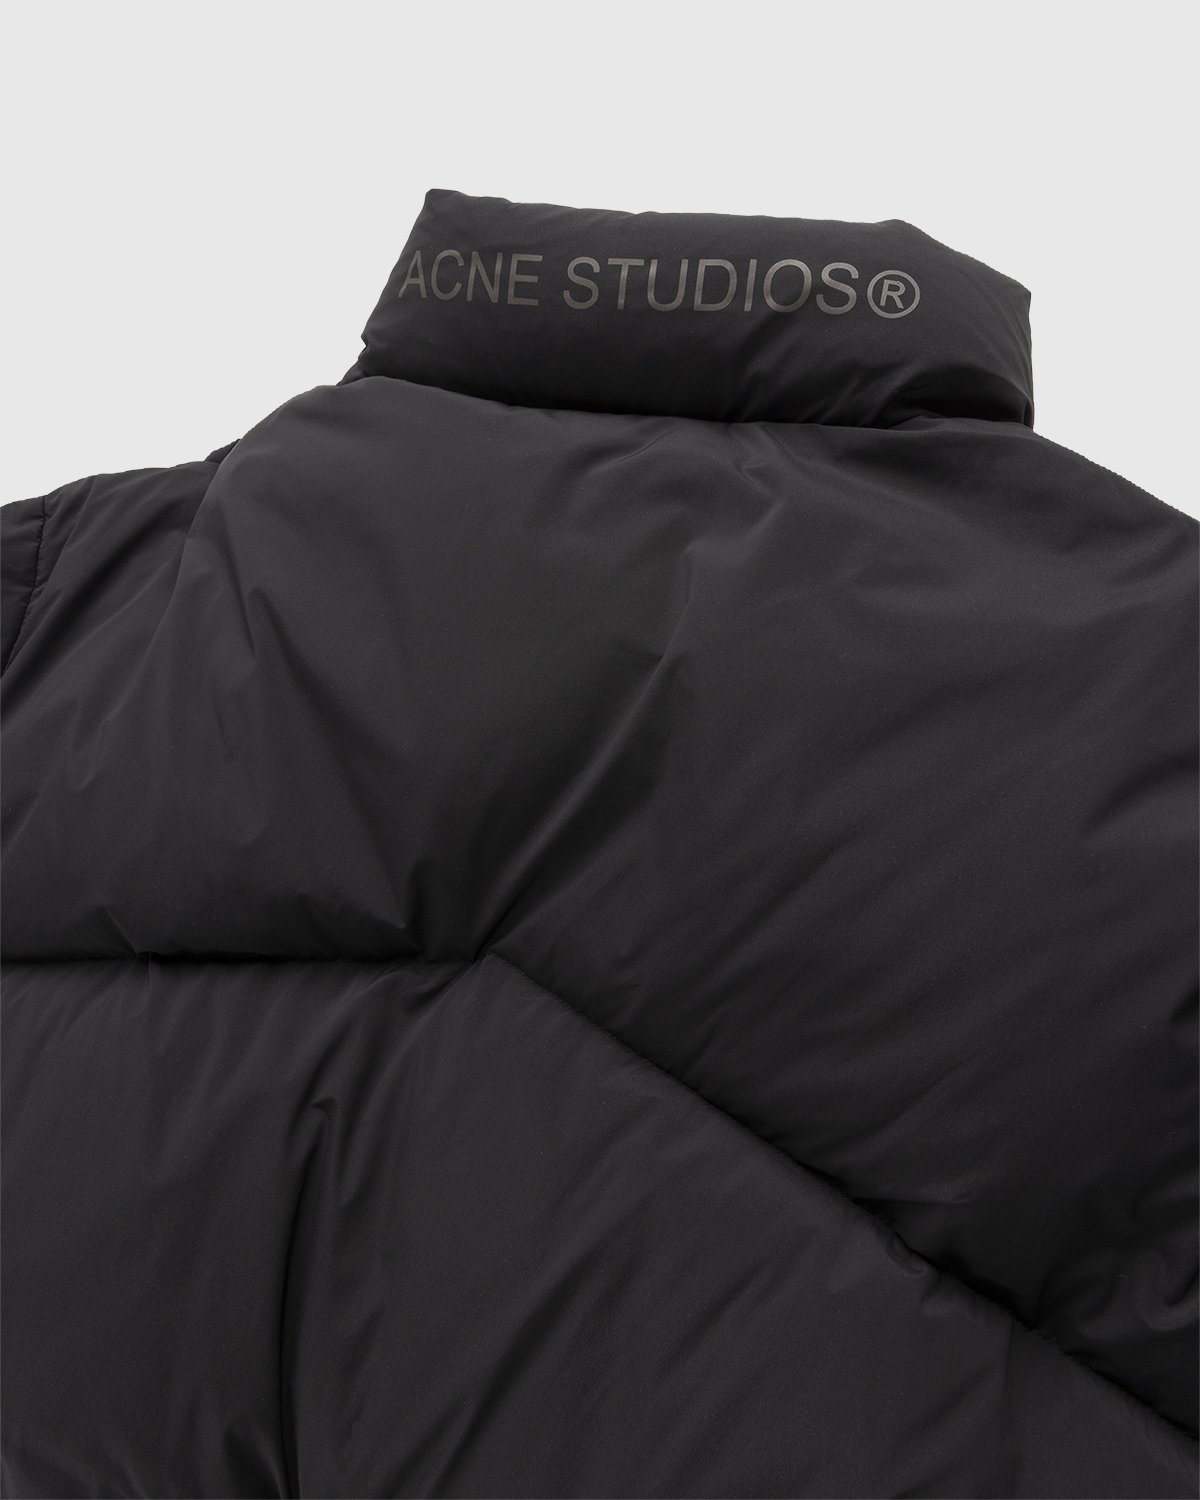 Acne Studios - Puffer Jacket Black - Clothing - Black - Image 3